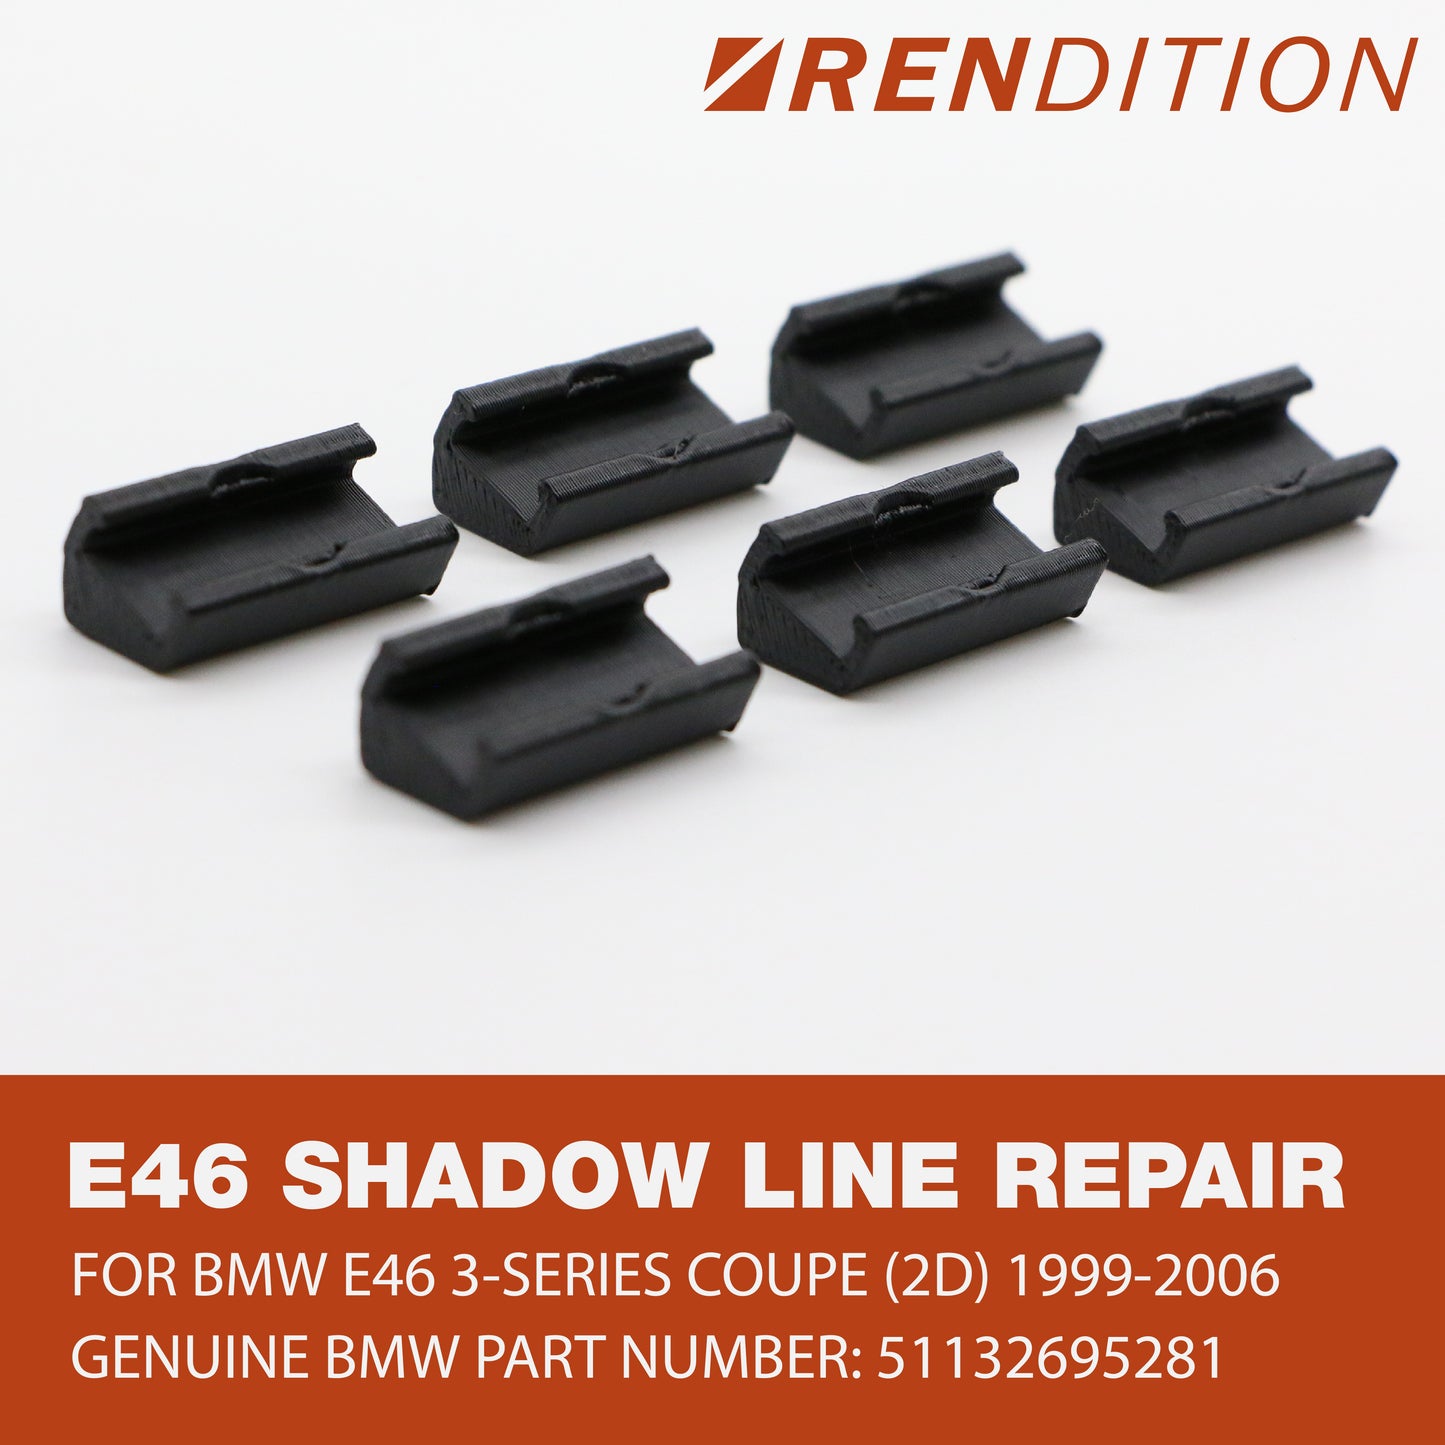 BMW E46 Shadowline Trim Repair Kit Repair V2 Window Trim Tabs